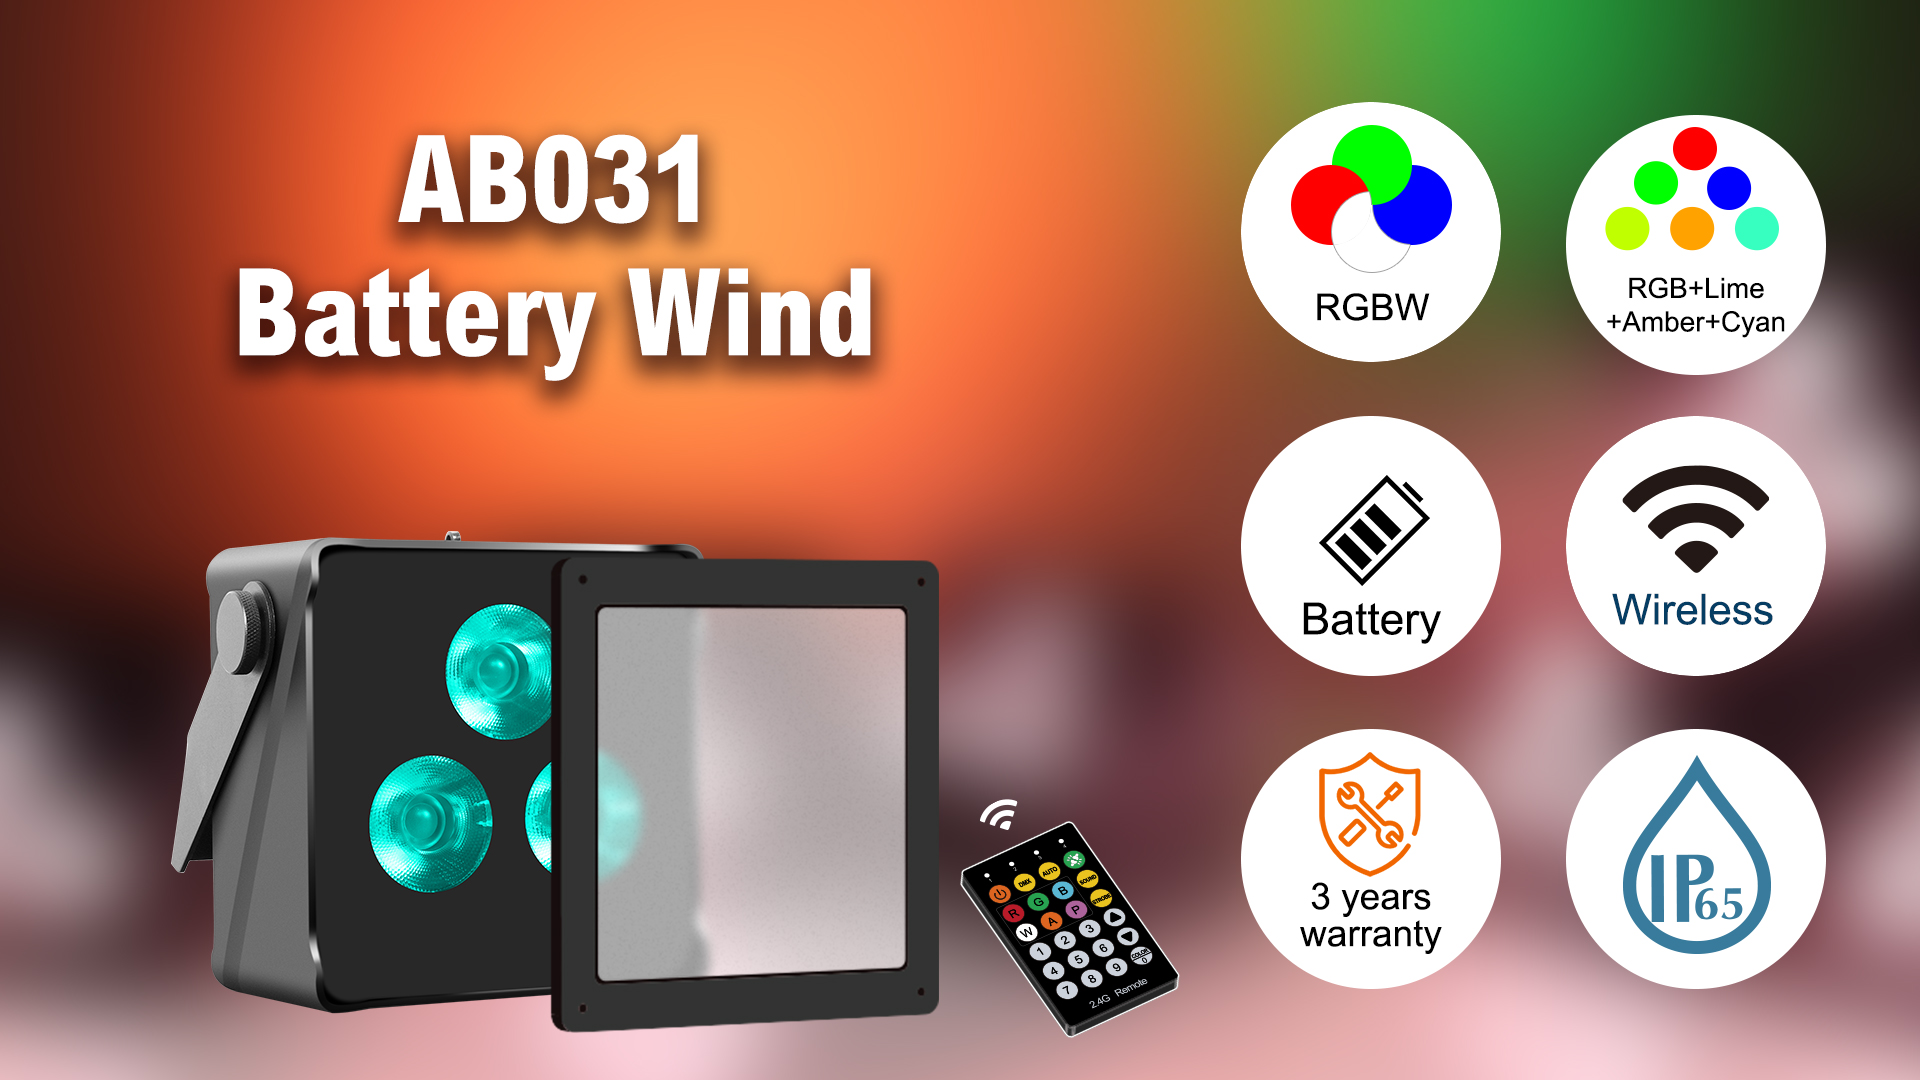 Battery wind 3*10W 4 in 1 RGB+WW LEDs